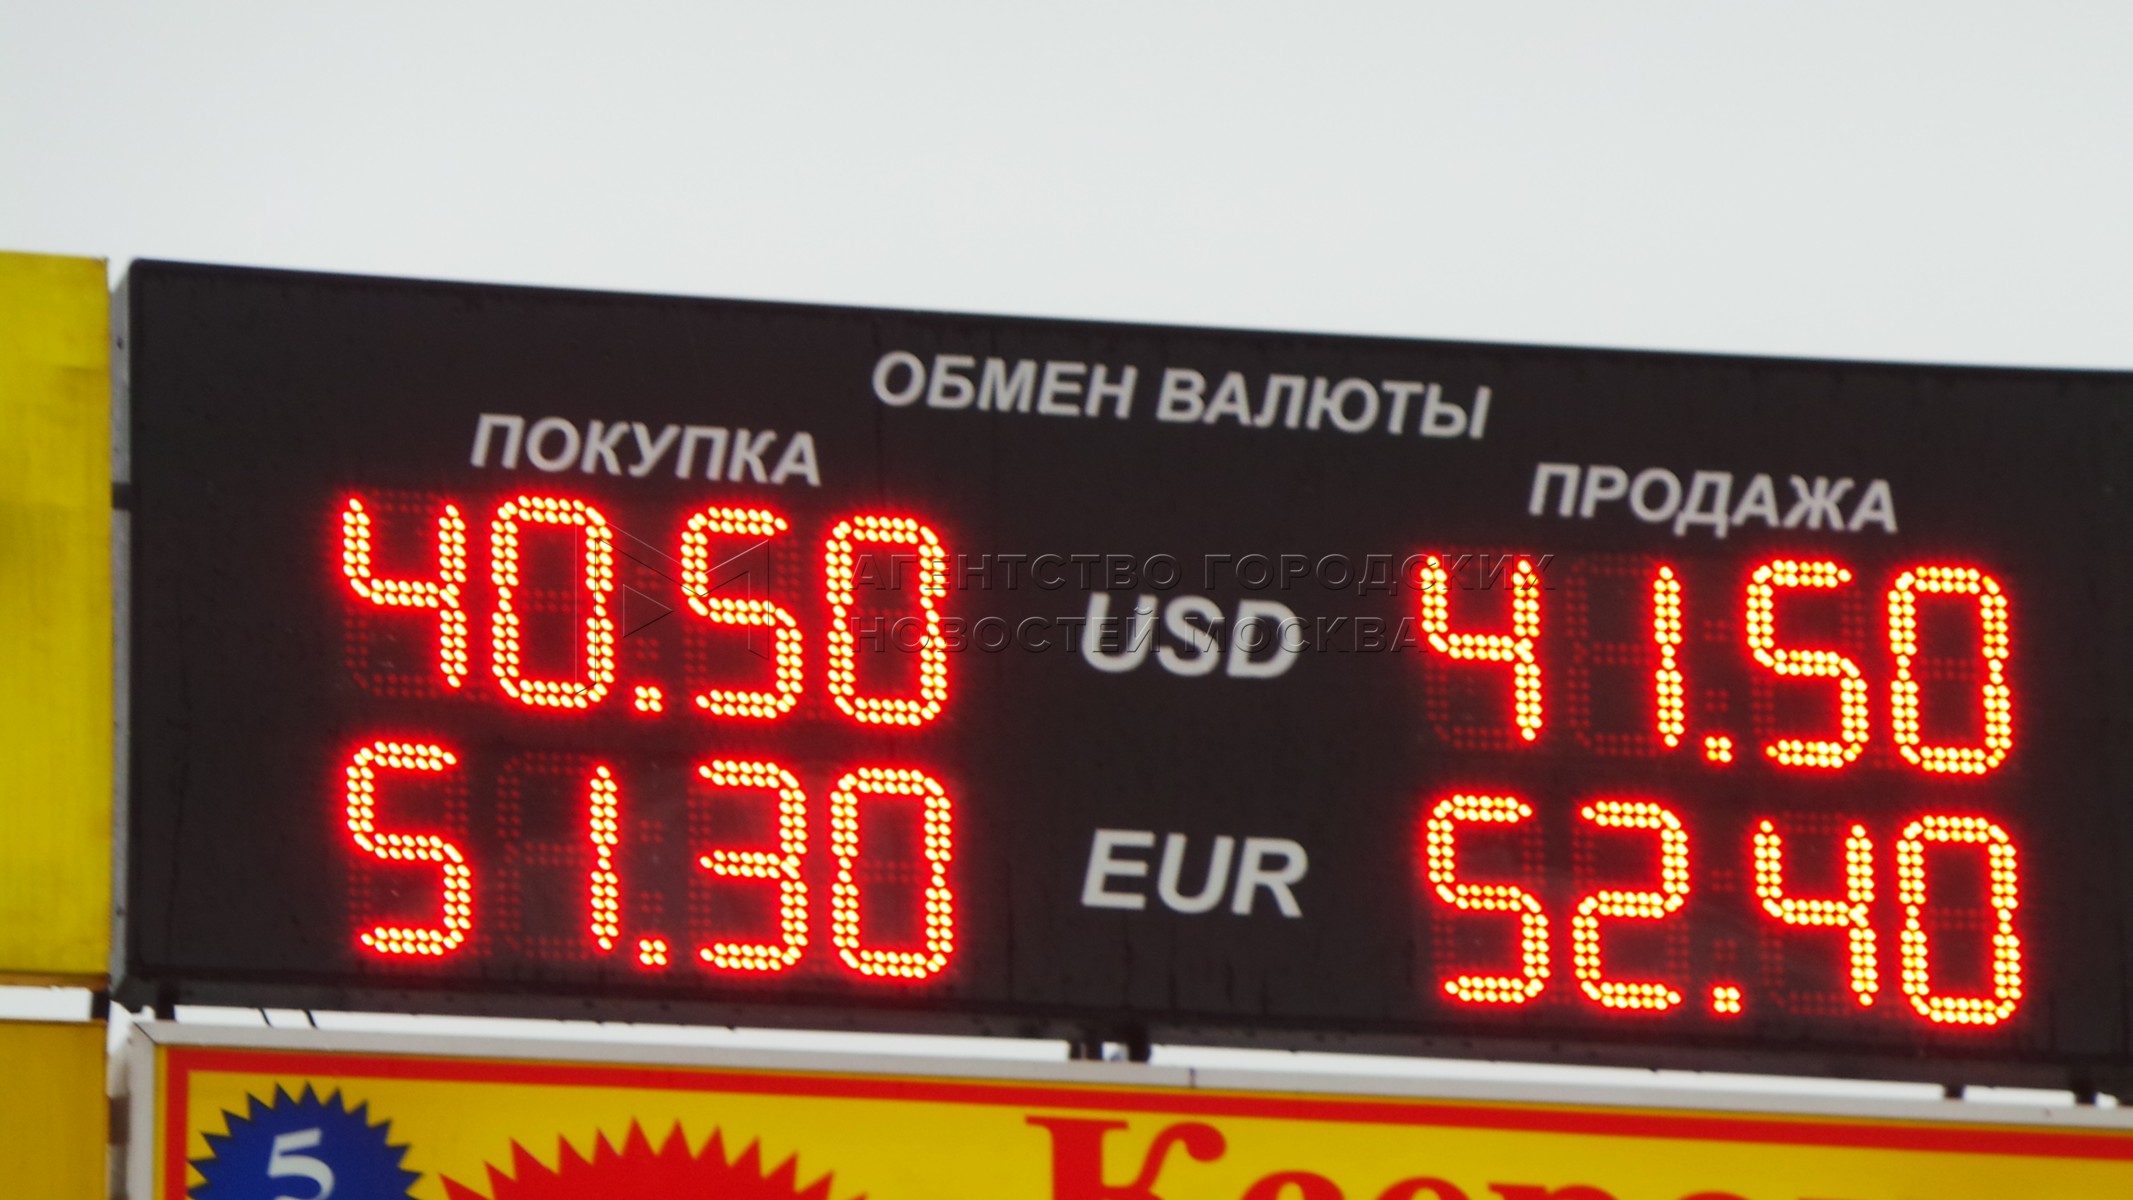 кантемировская обмен валюты